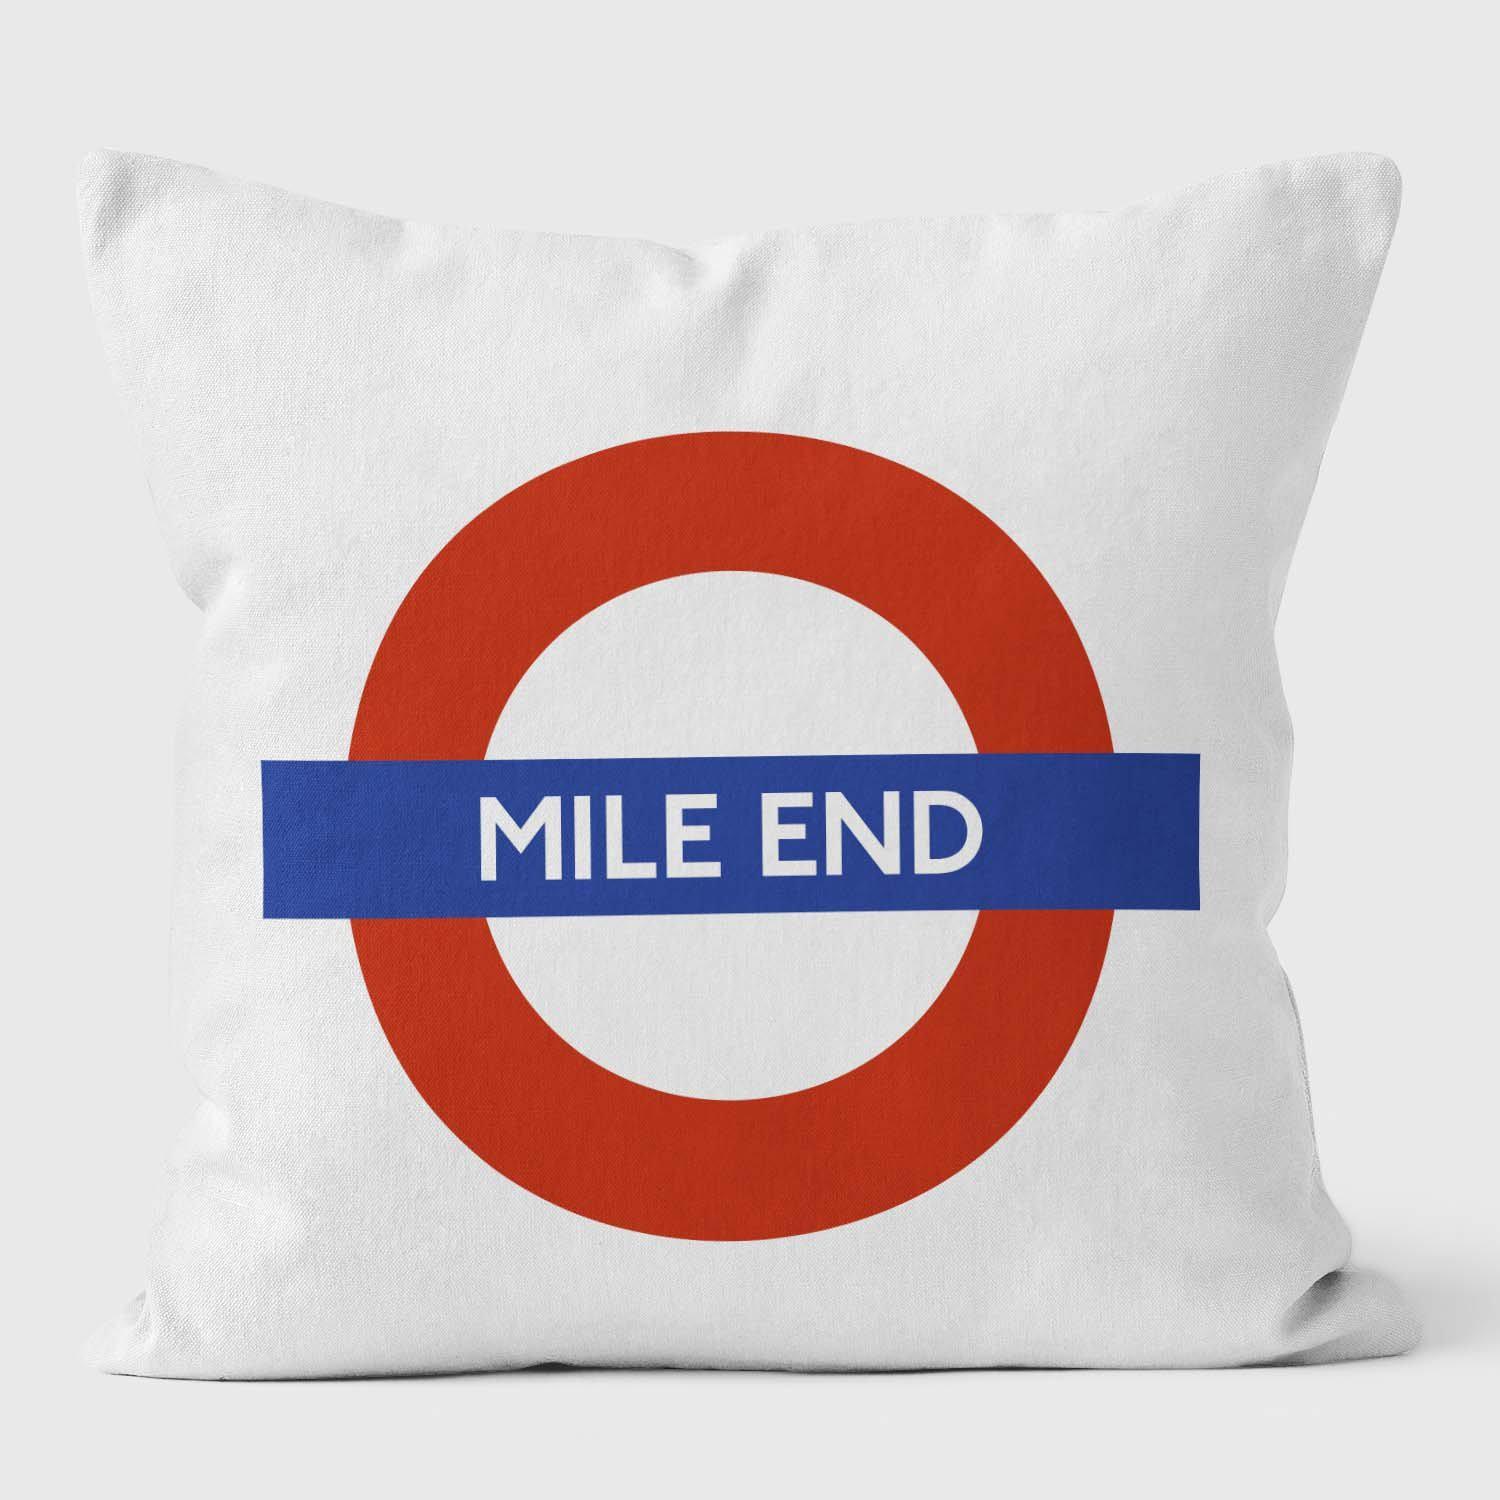 Mile End London Underground Tube Station Roundel Cushion - Handmade Cushions UK - WeLoveCushions